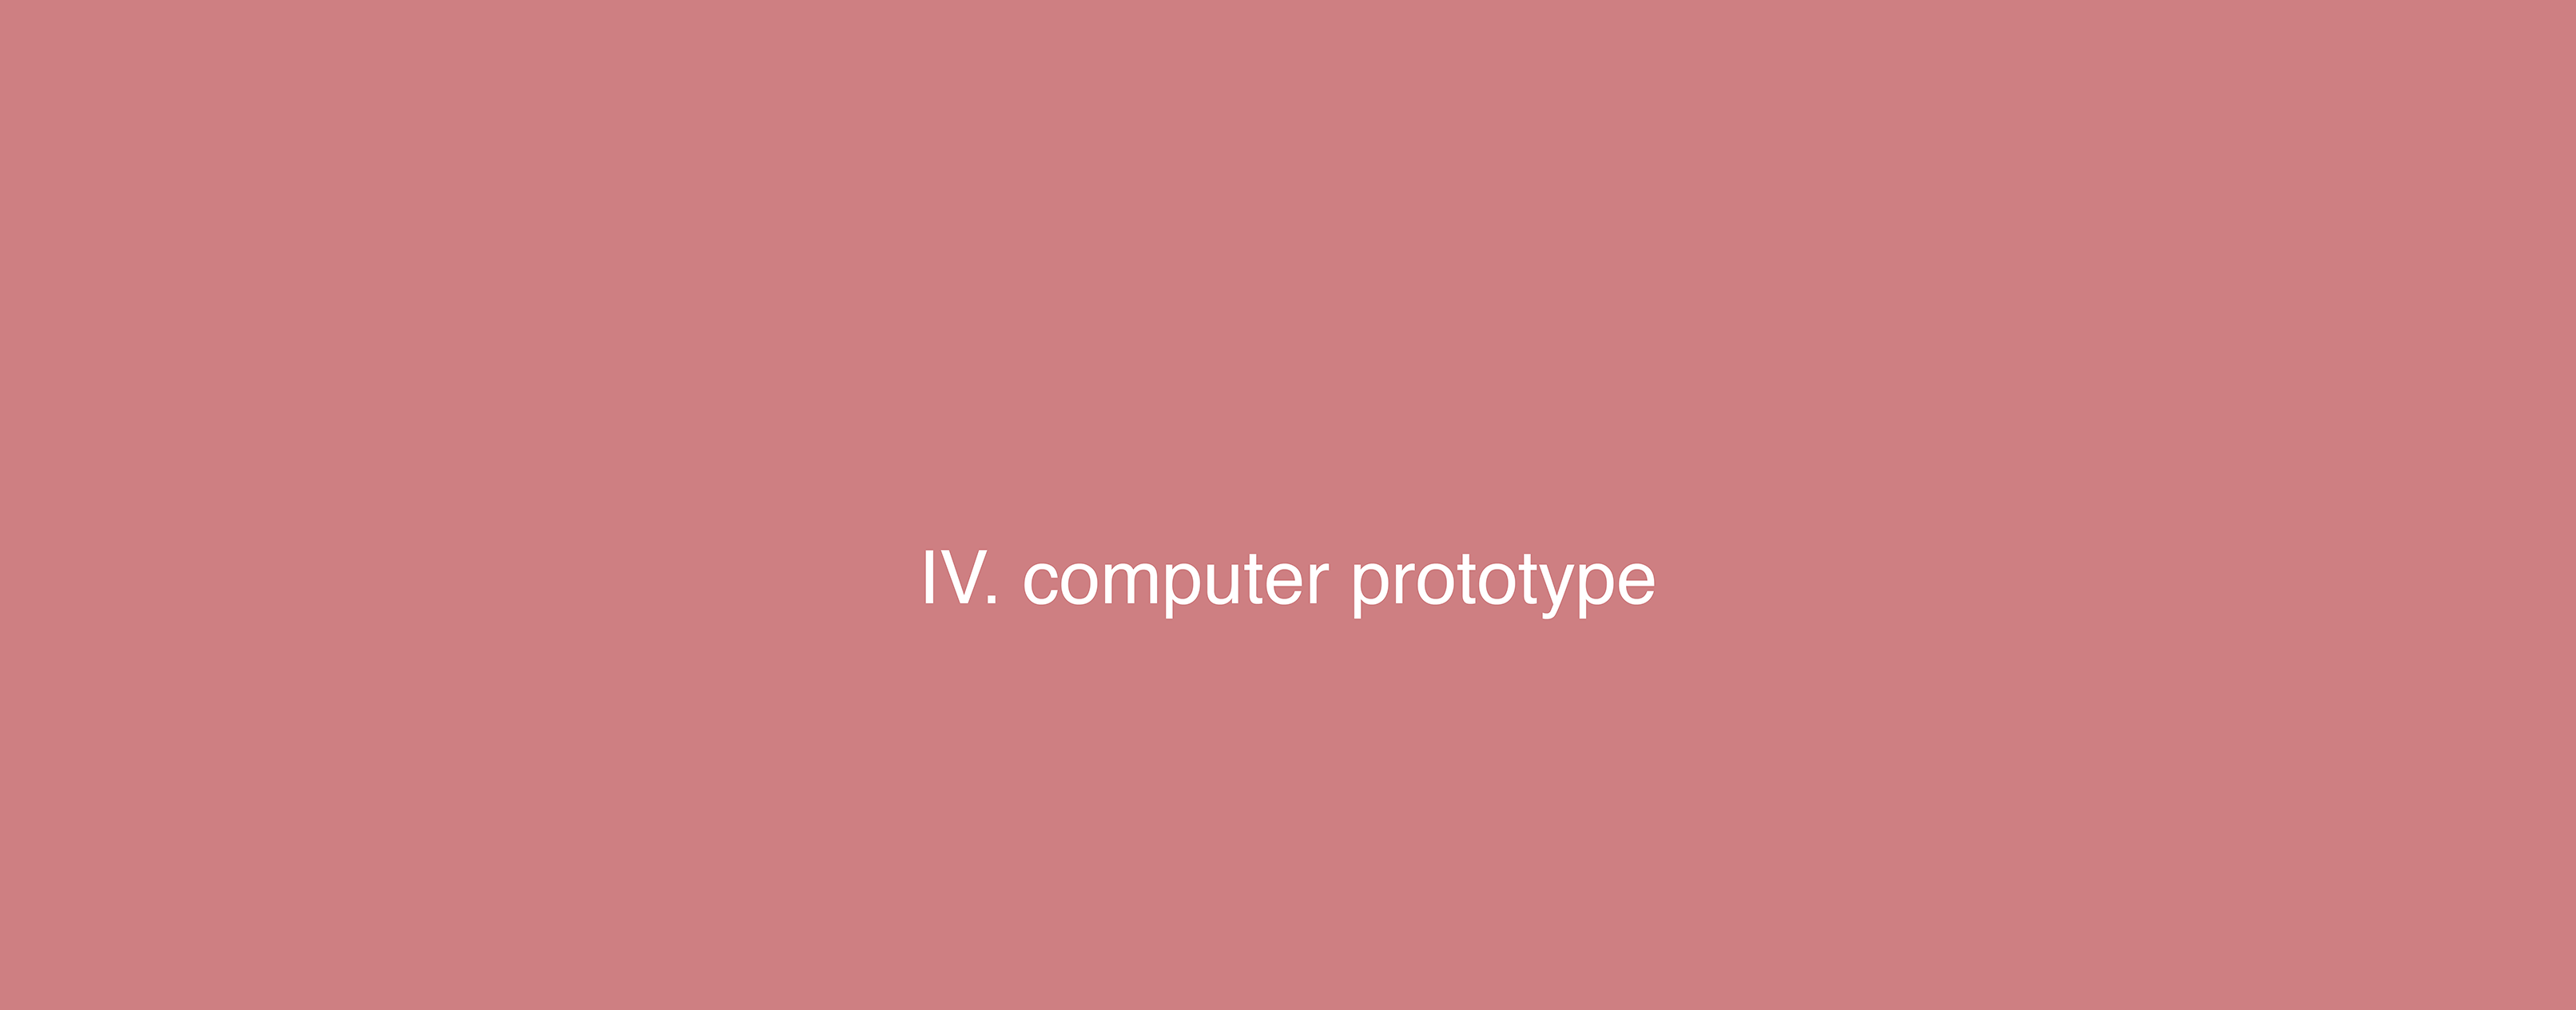 Computer Prototype